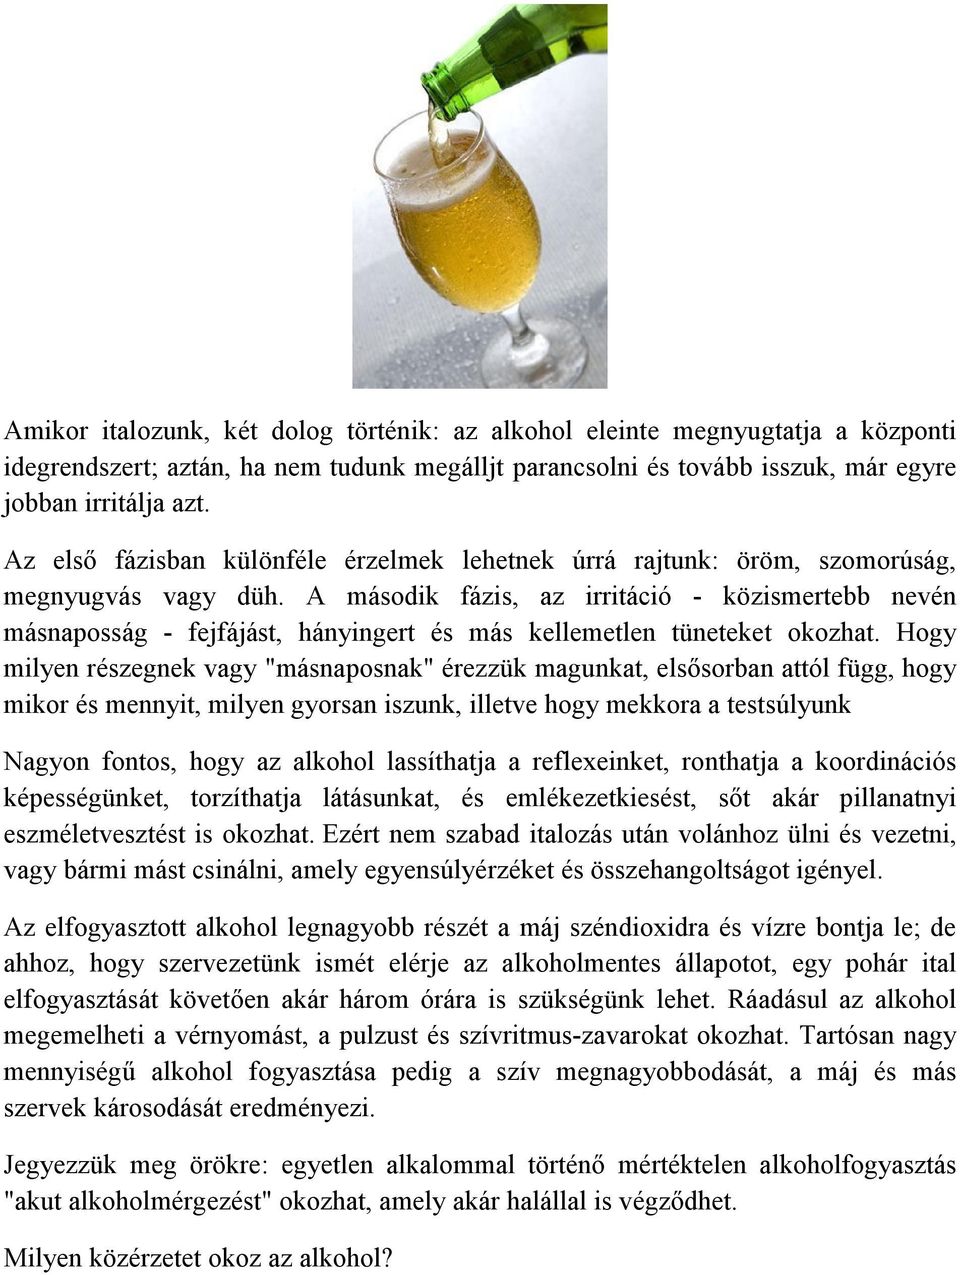 hogyan befolyásolja az alkohol a szív egészségét központi)